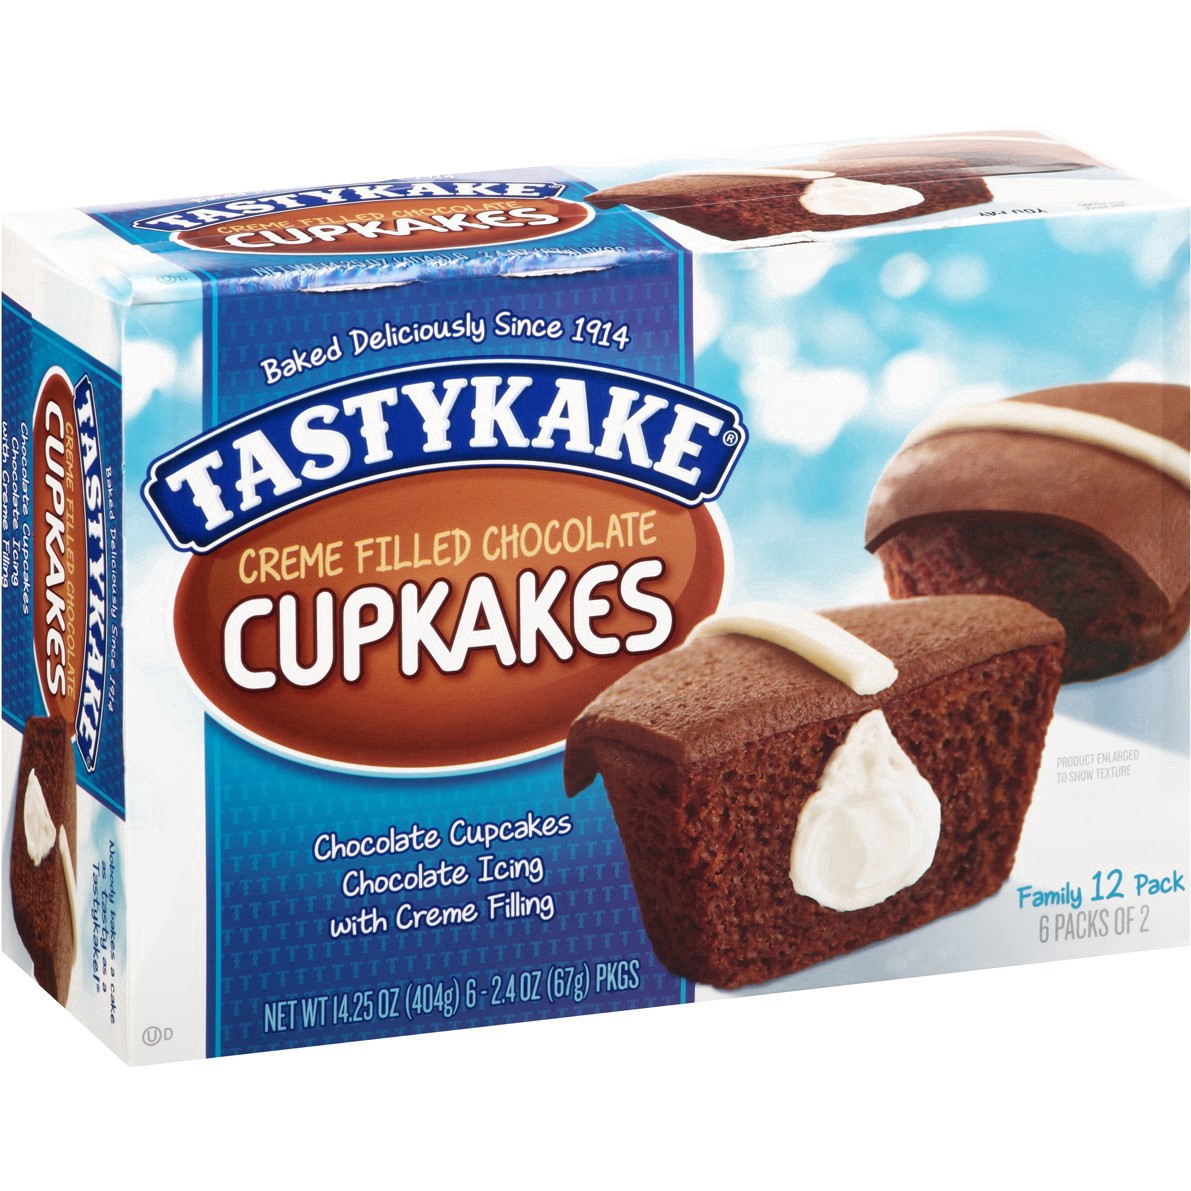 slide 21 of 59, Tastykake Creme Filled Chocolate Cupcakes 6-2.4 oz. Packs, 6 ct